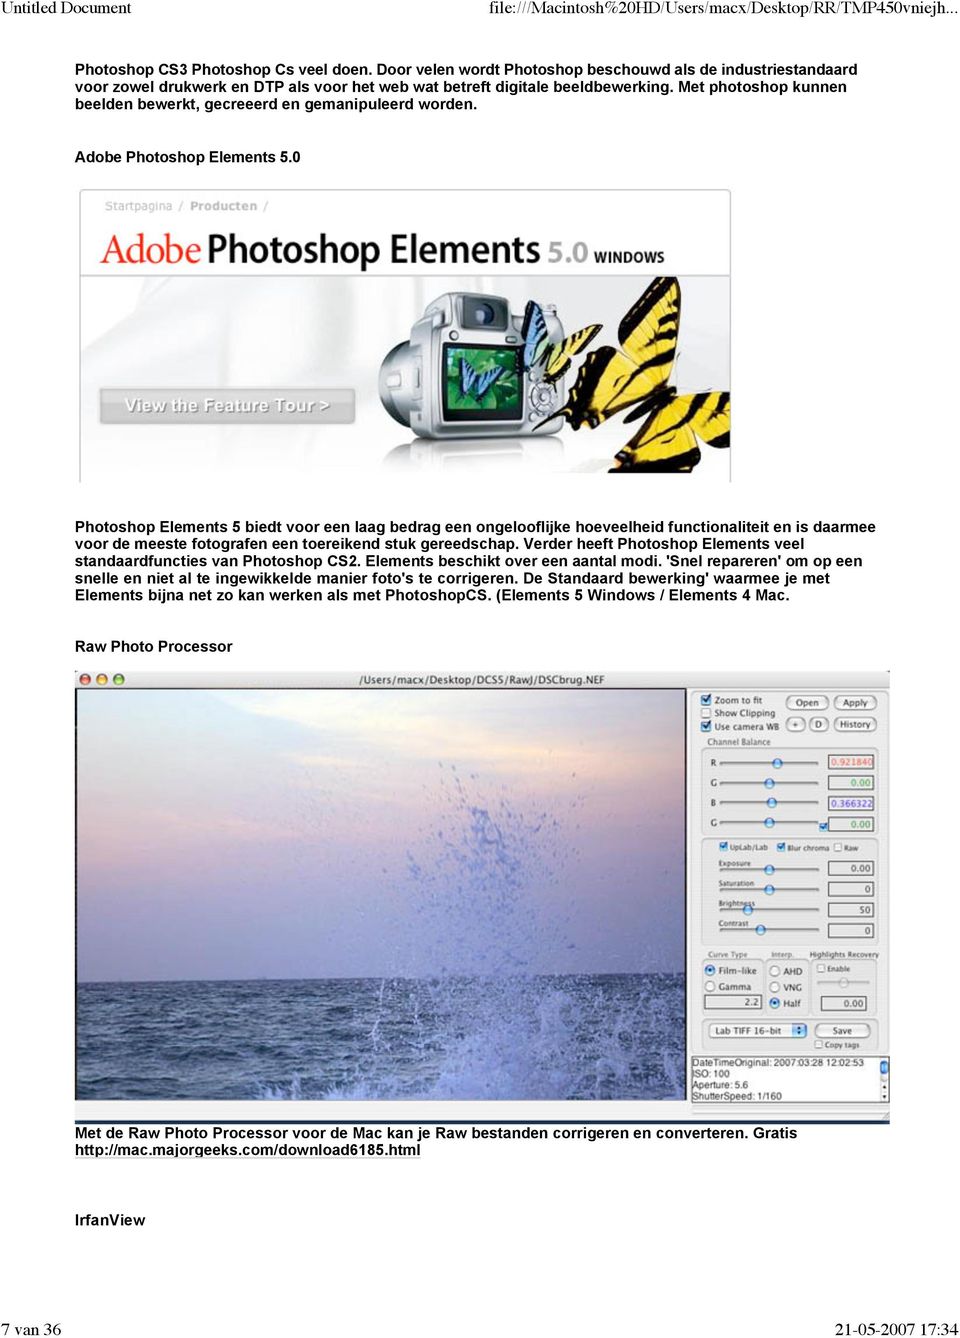 0 Photoshop Elements 5 biedt voor een laag bedrag een ongelooflijke hoeveelheid functionaliteit en is daarmee voor de meeste fotografen een toereikend stuk gereedschap.